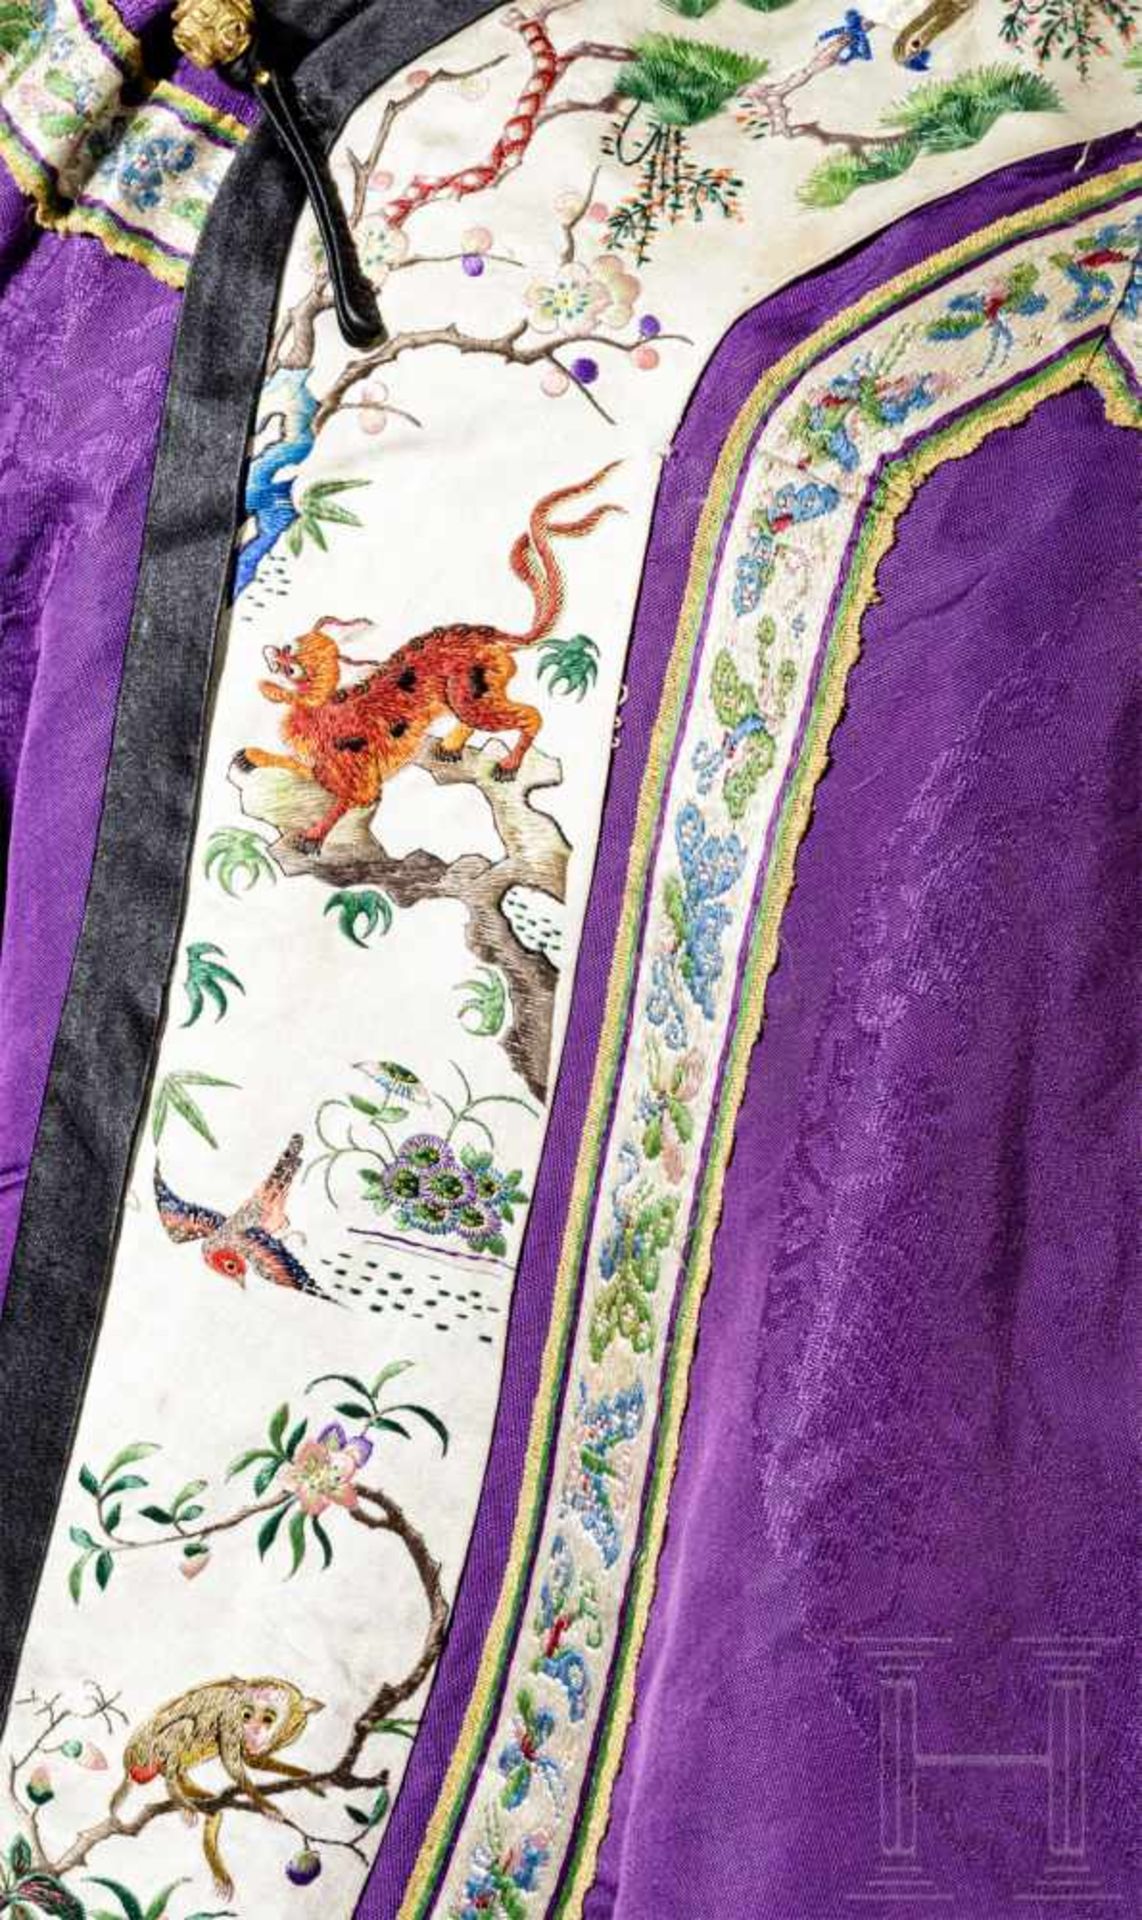 Robe und Hut eines höheren Staatsbeamten, China, 19. Jhdt.Bodenlange Robe aus violettem Seidendamast - Bild 3 aus 5